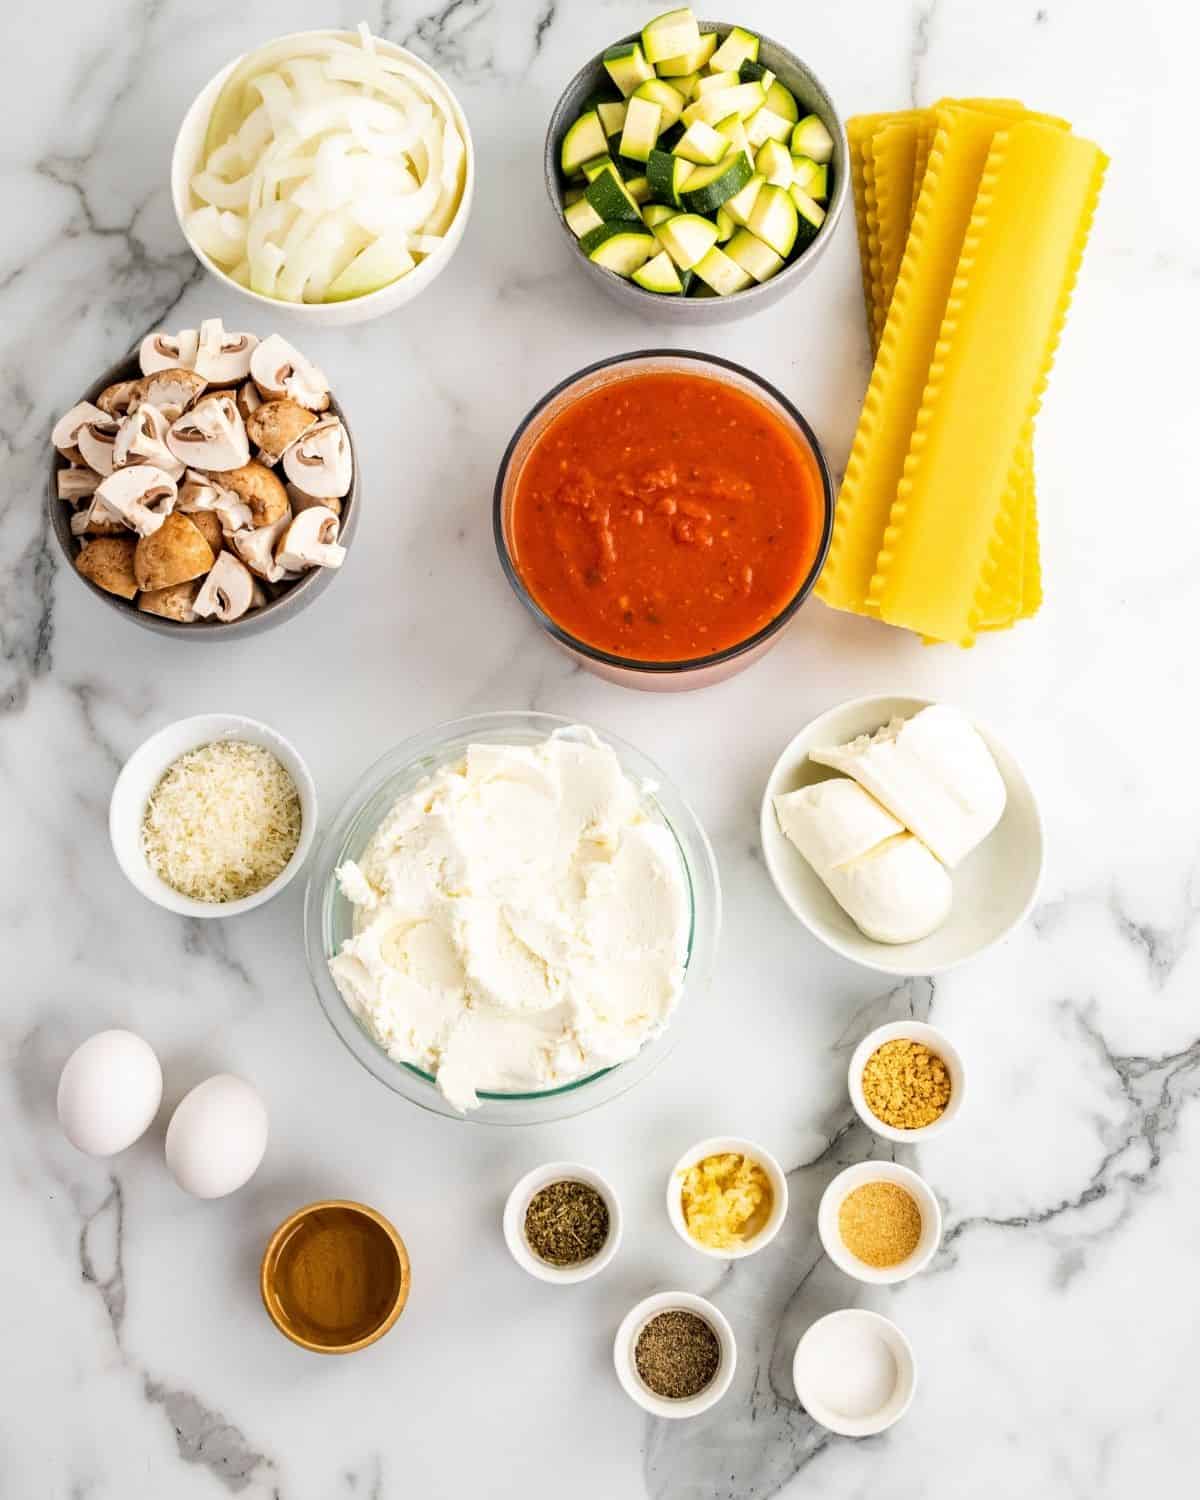 Ingredients for Vegetable Lasagna